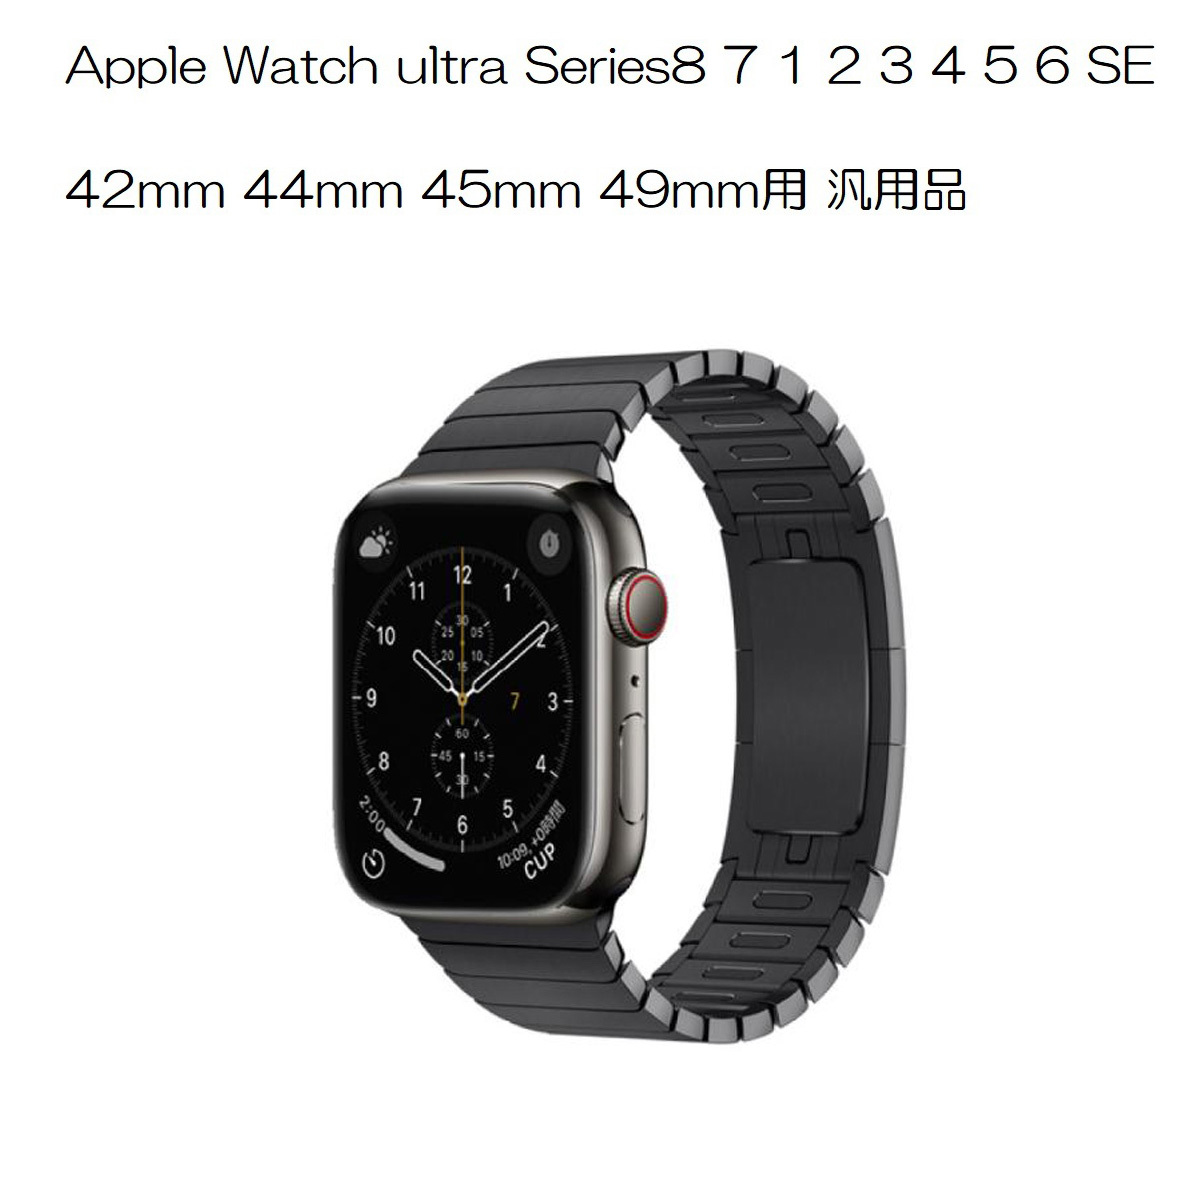 アップルウォッチ Apple Watch 42mm 44mm 45mm 49mm バンド ブレス メタル ブラック リンクブレスレット 汎用 バタフライバックル 両開き